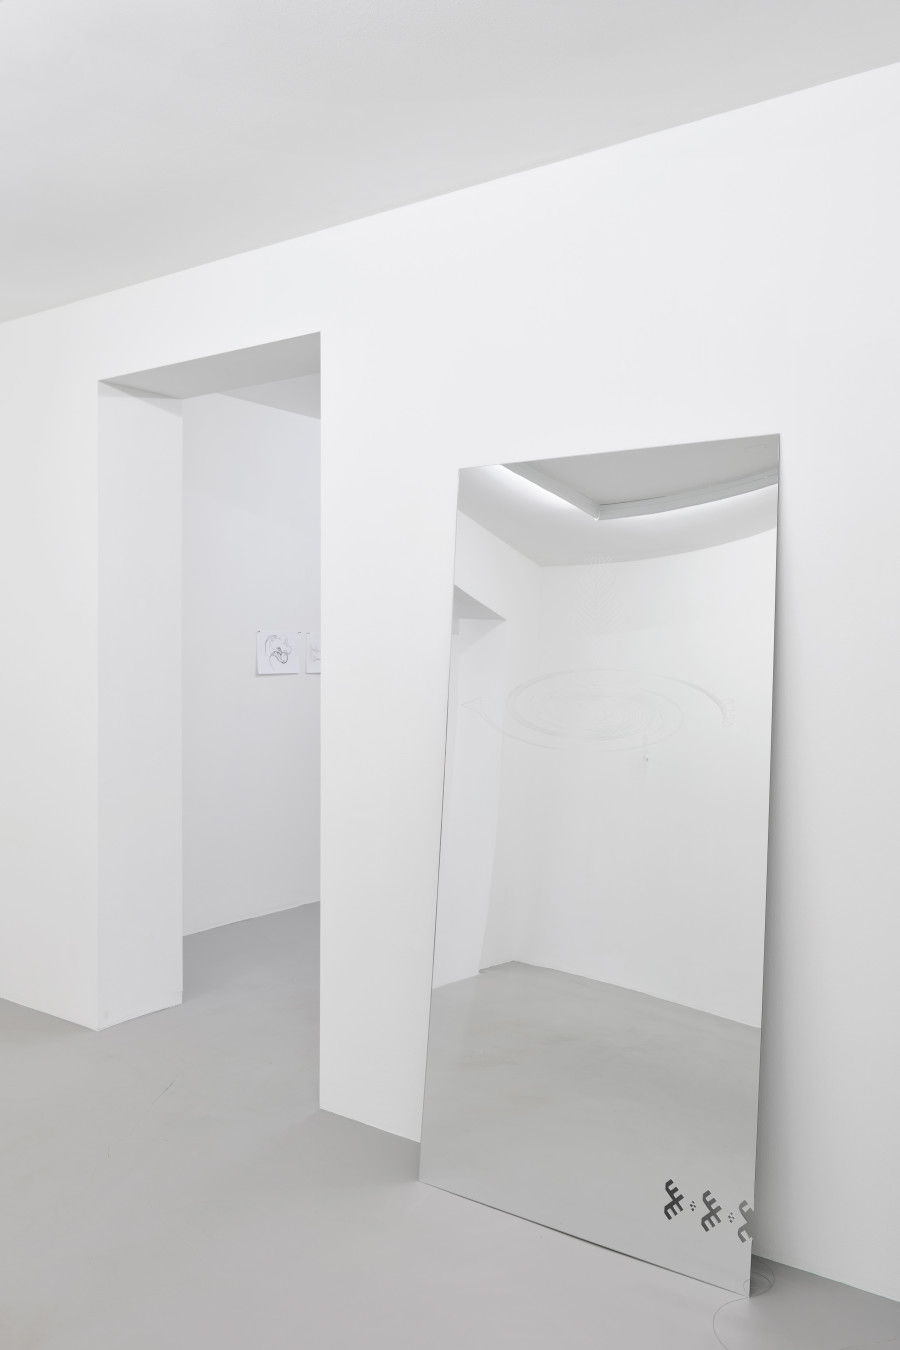 Untitled, 2022, Plexiglass, 179 x 85 x 17 cm